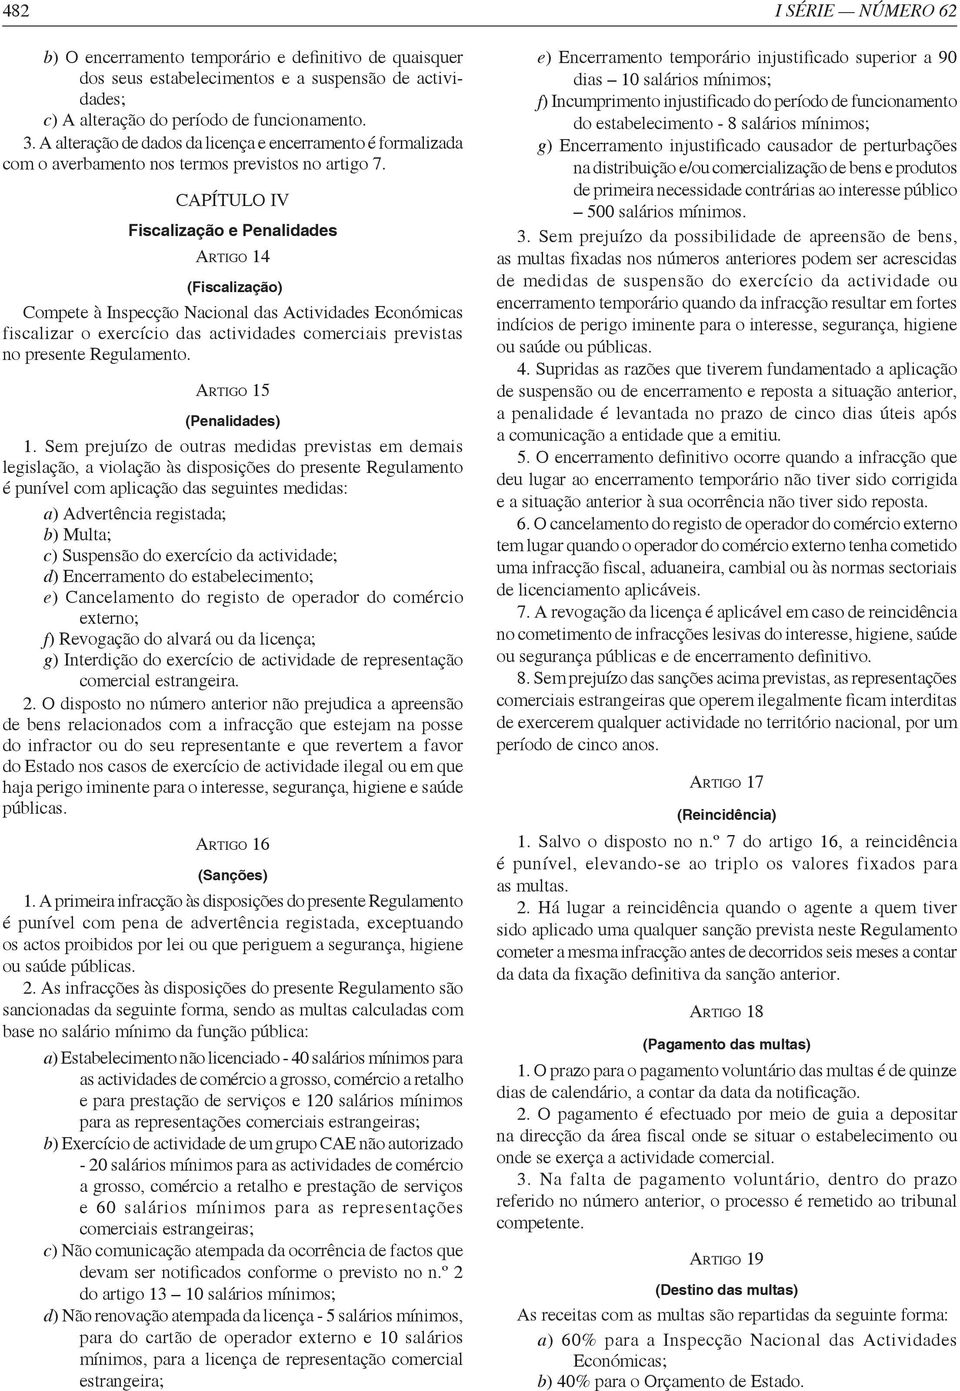 CAPÍTULO IV Fiscalização e Penalidades ARTIGO 14 (Fiscalização) Compete à Inspecção Nacional das Actividades Económicas fiscalizar o exercício das actividades comerciais previstas no presente